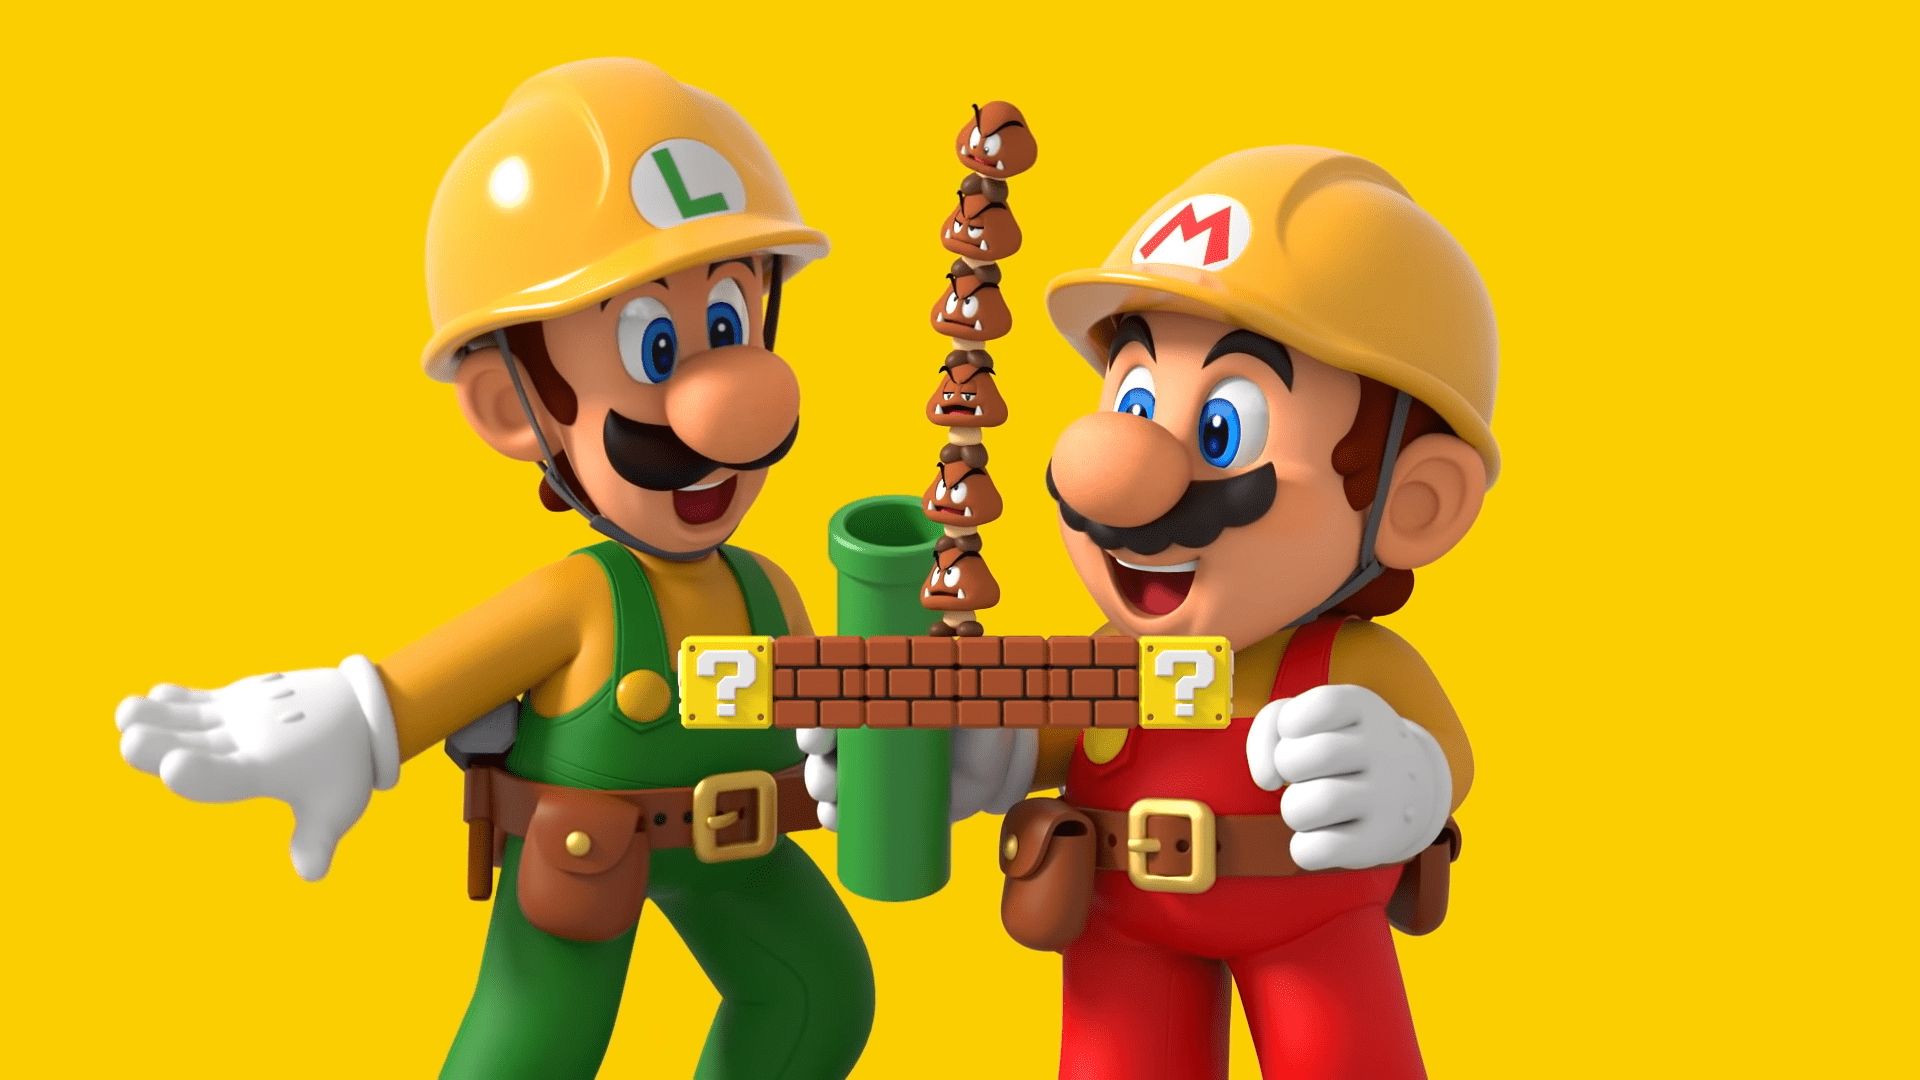 Super Mario Maker 2 HD Wallpaper 68158 1920x1080px